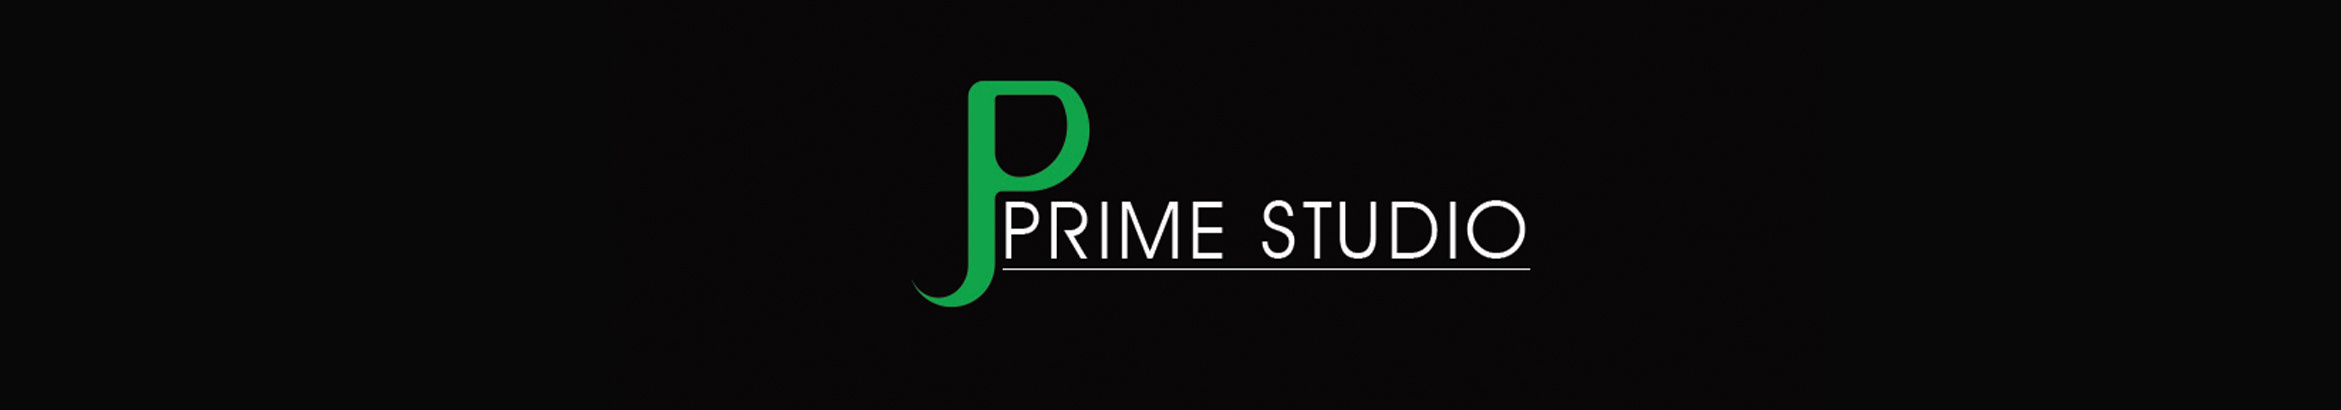 Prime Studio 님의 프로필 배너